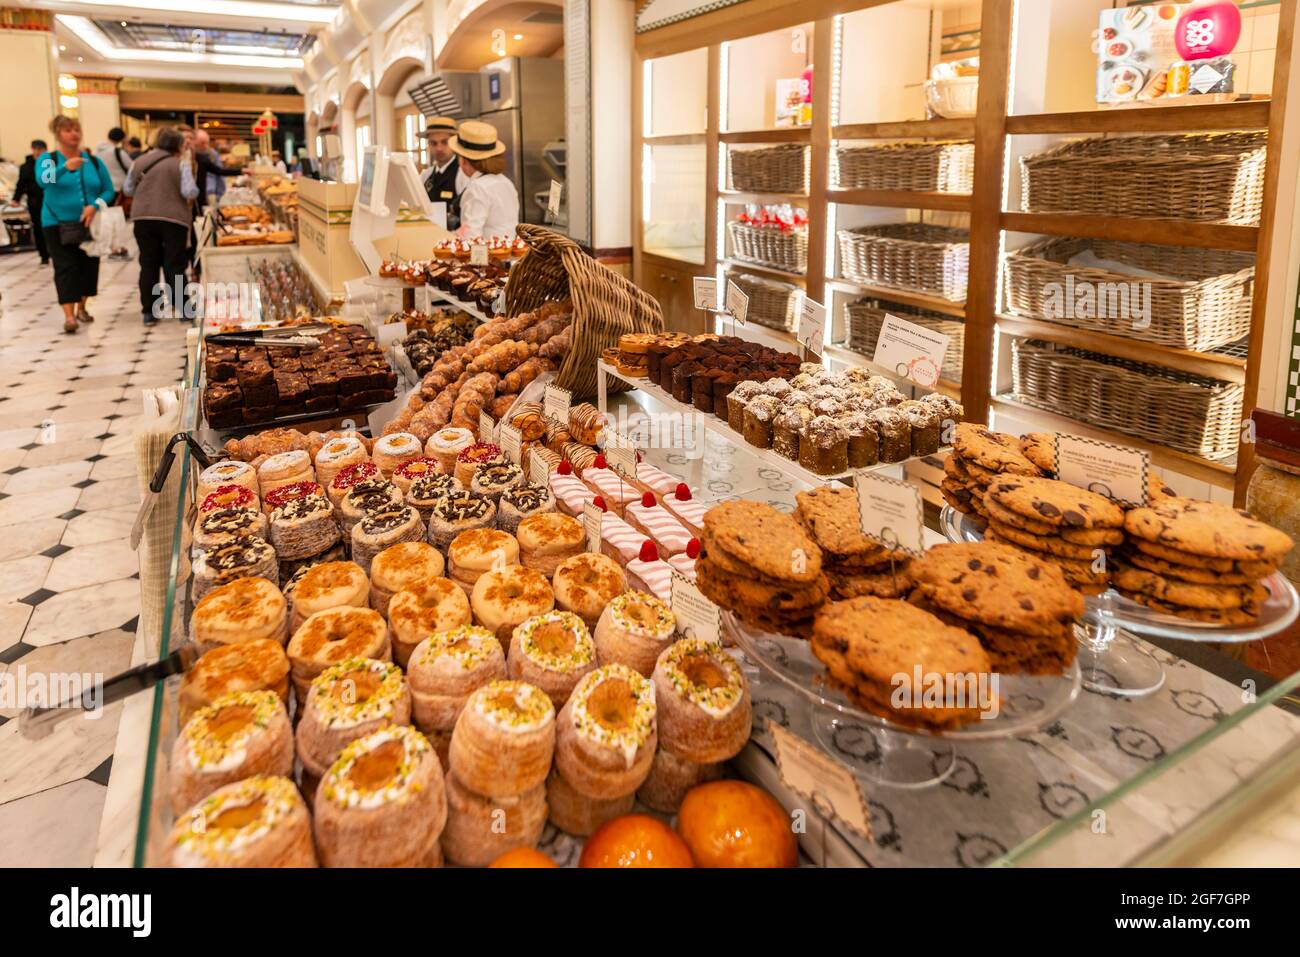 Biscuits et pâtisseries sucrées à un étalage, grands magasins de luxe, Harrods, Londres, Angleterre, Royaume-Uni Banque D'Images